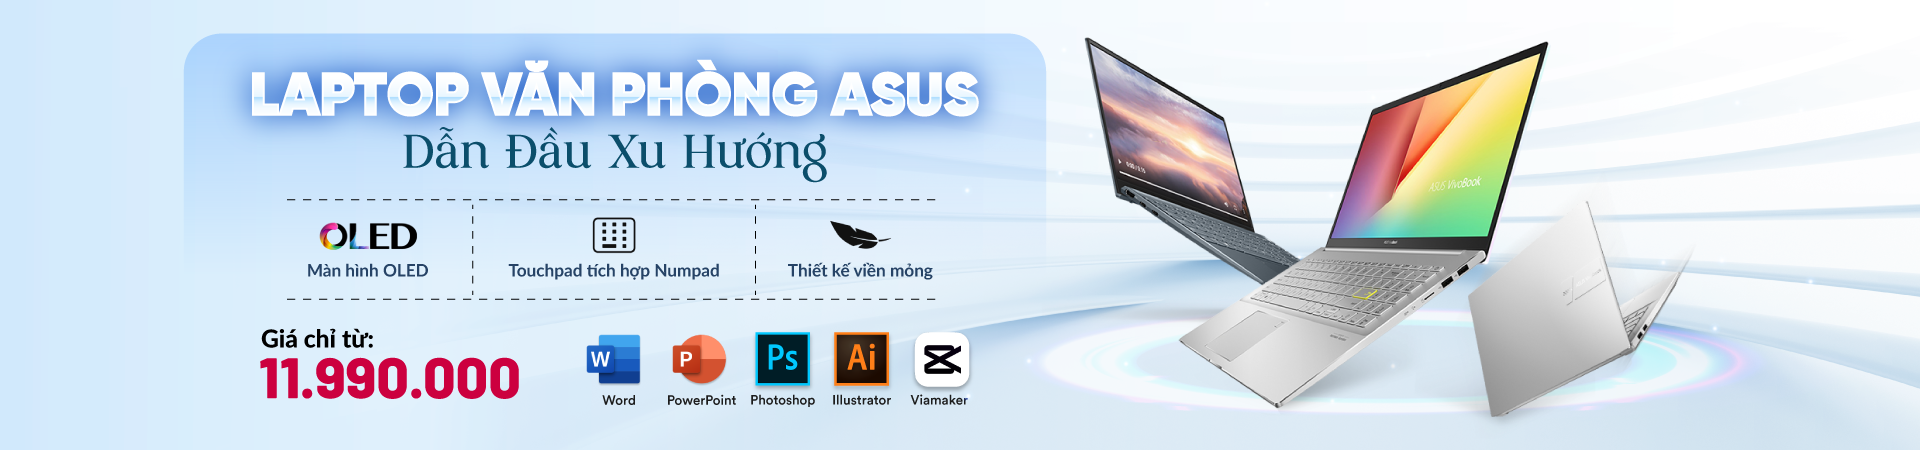 Laptop ASUS - Học tập và Làm việc